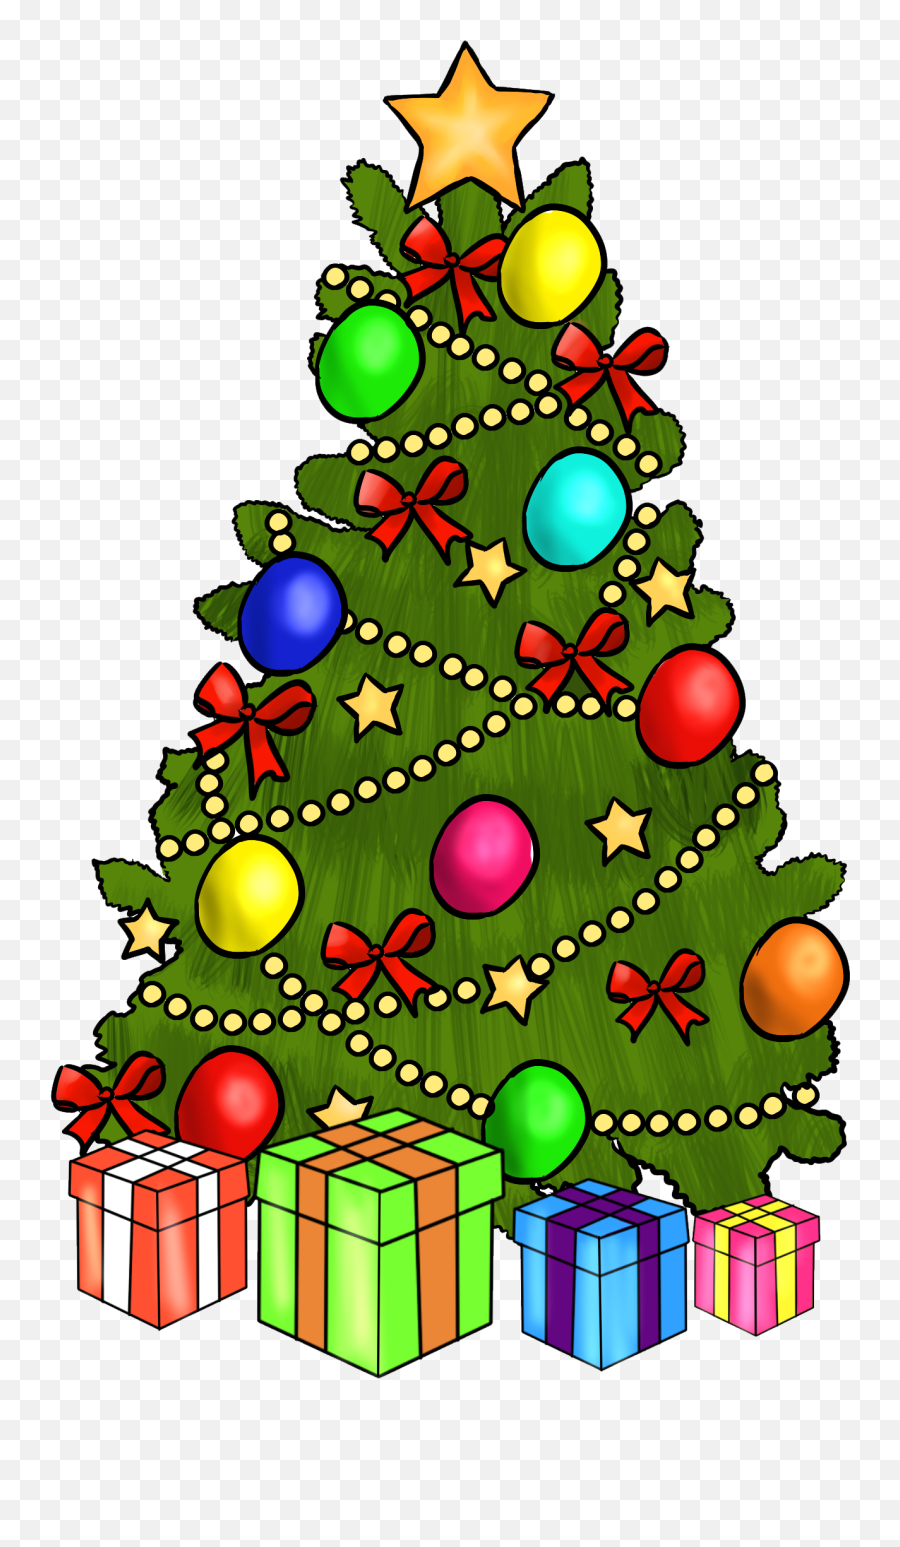 11 Best Christmas Clip Art Images - Clip Art Christmas Images Free Png,Cartoon Christmas Tree Png